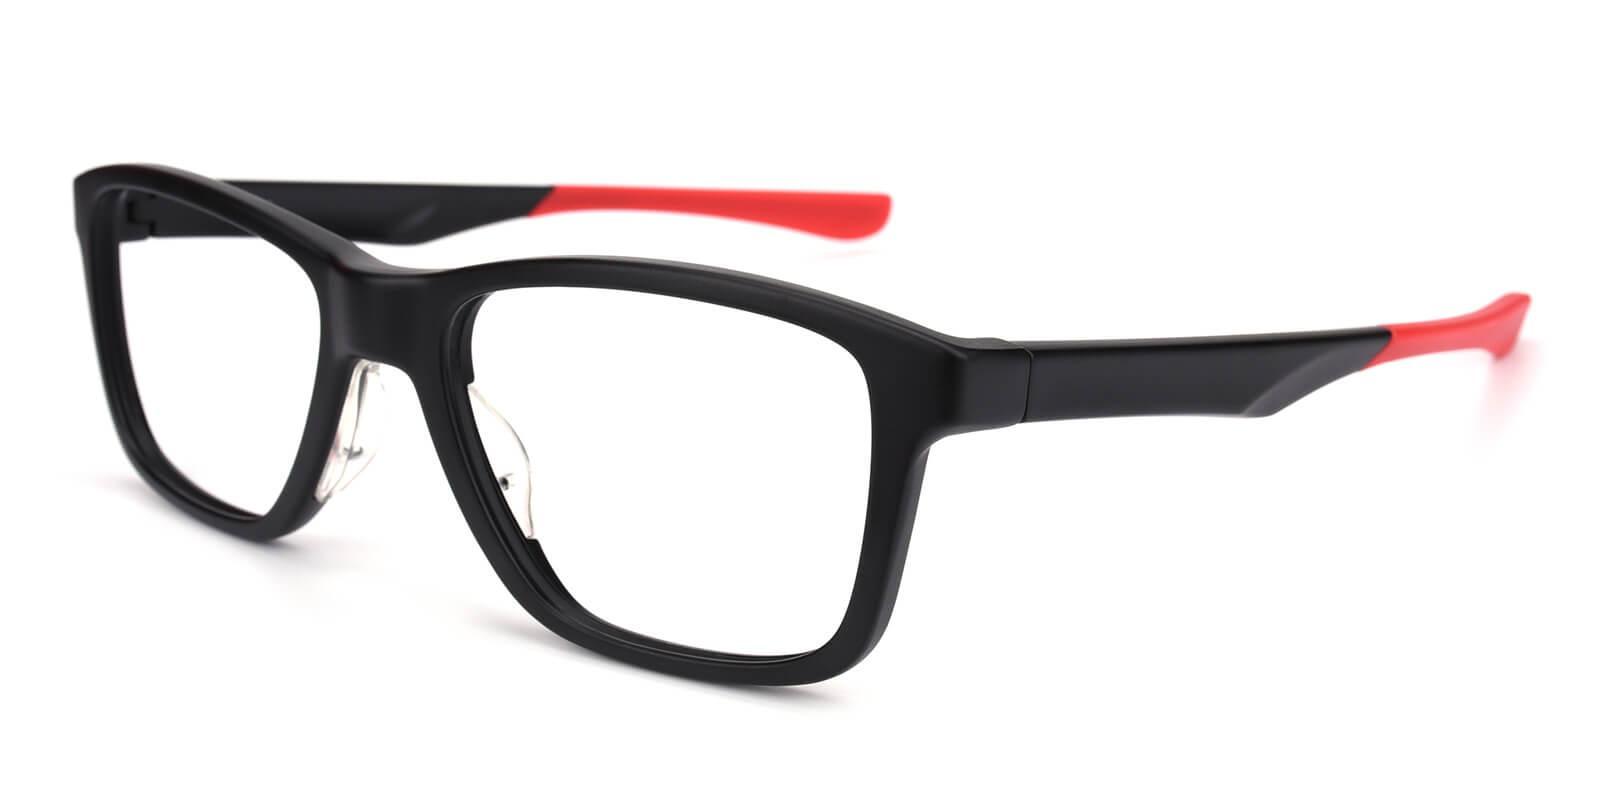 Poise Red TR SportsGlasses , UniversalBridgeFit Frames from ABBE Glasses